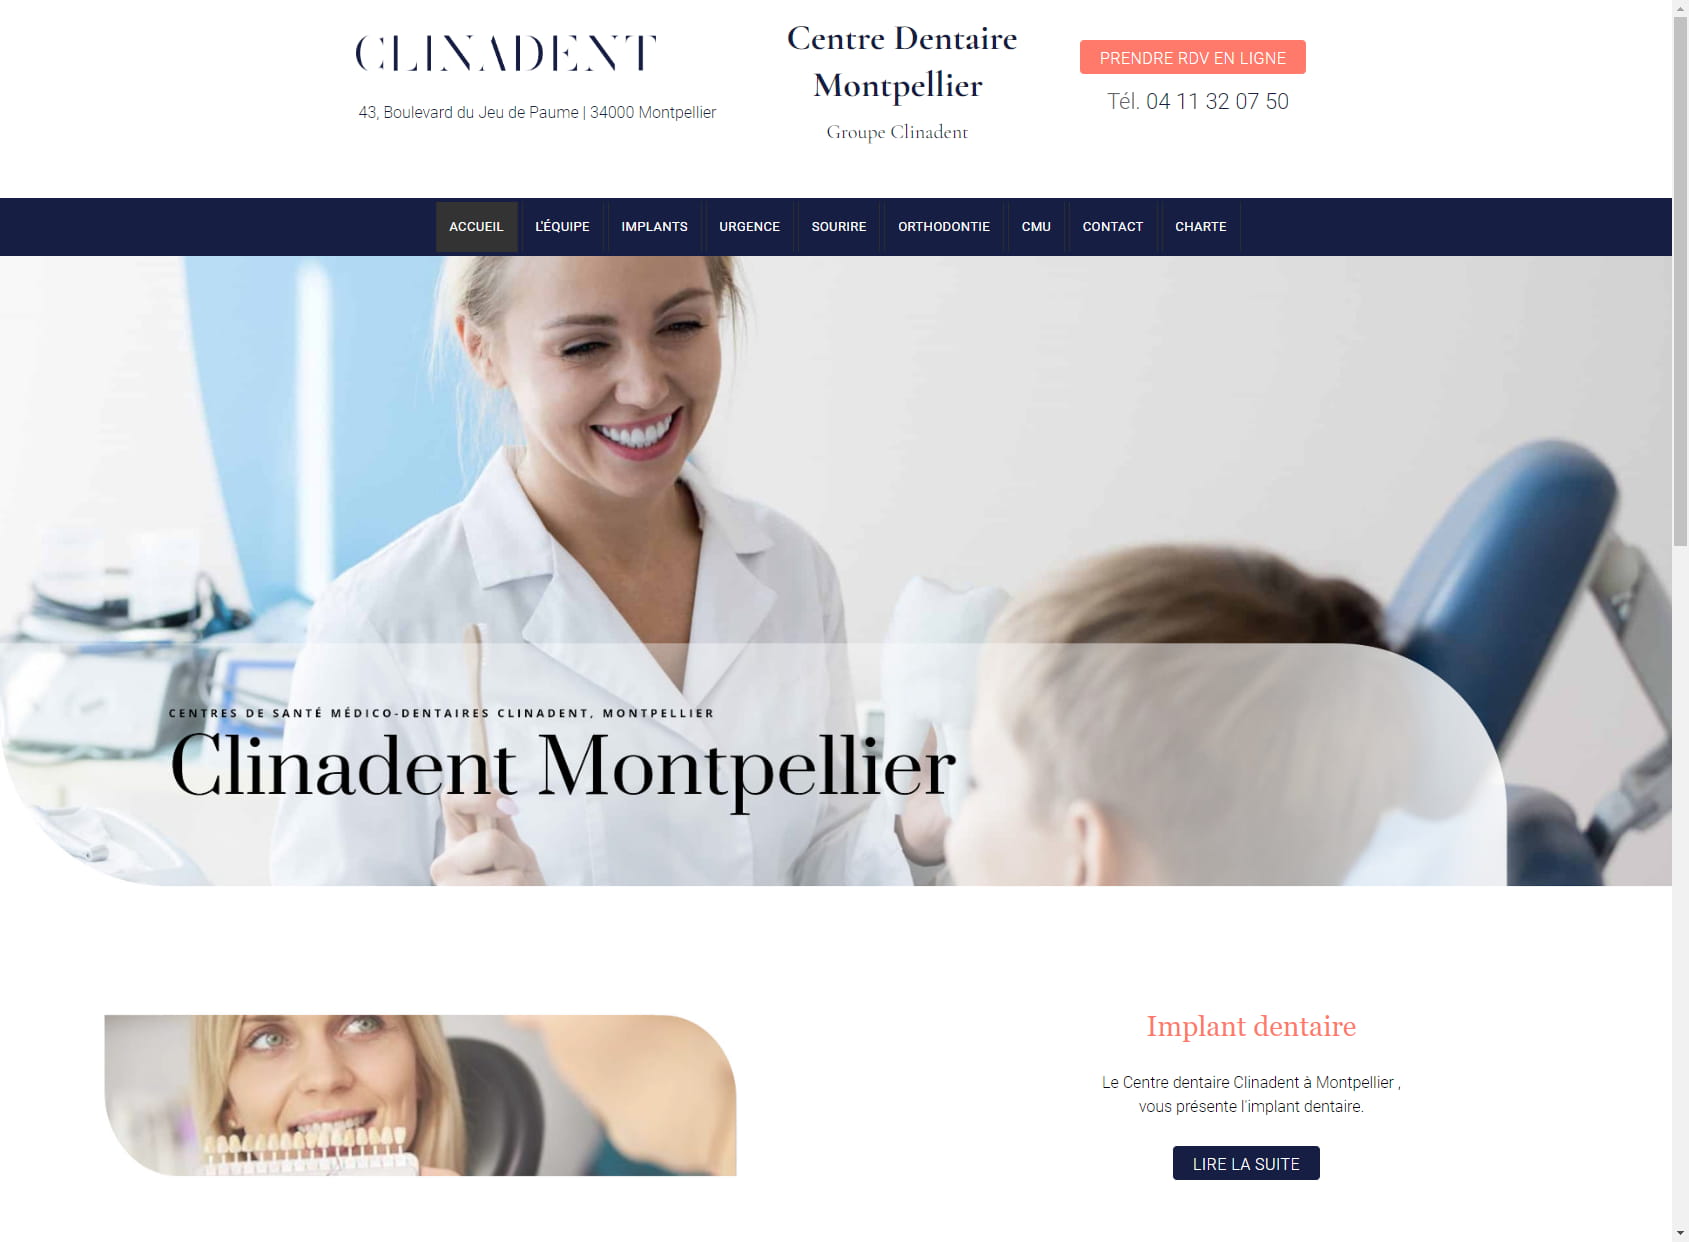 Clinadent - Centre Dentaire Montpellier Jeu de Paume